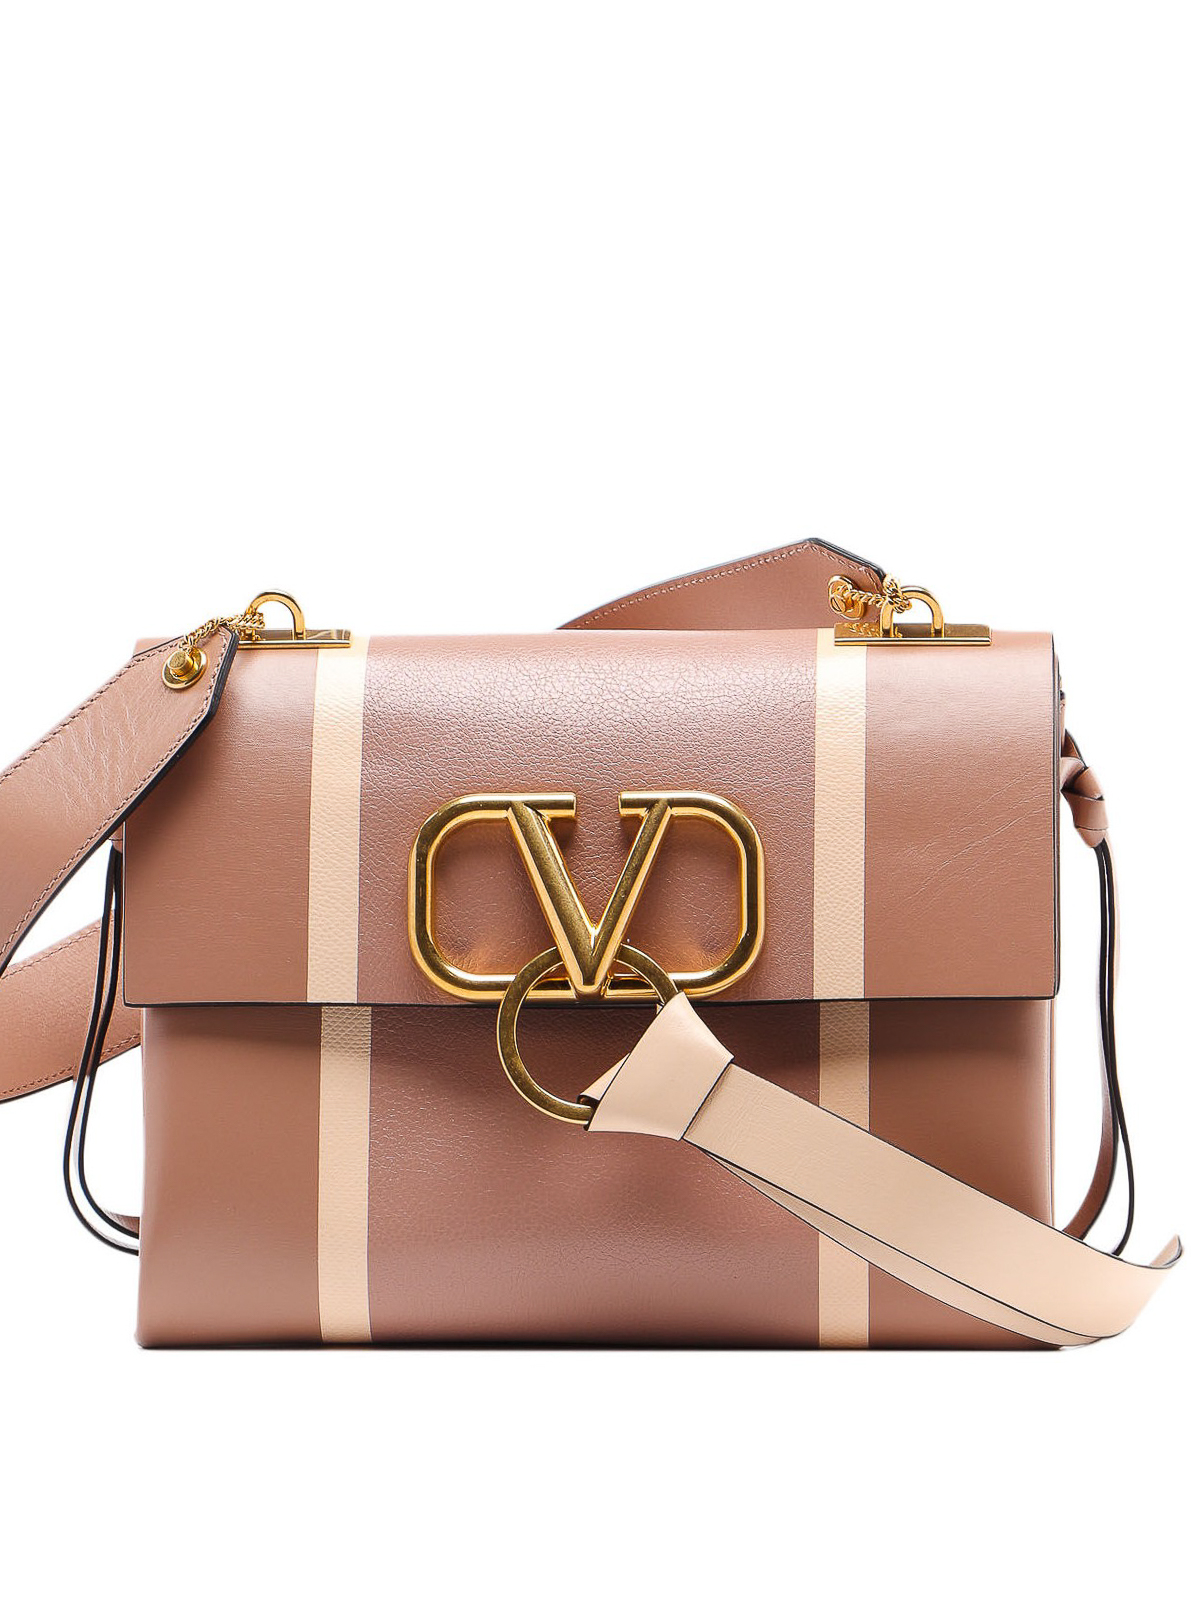 Valentino Garavani Large V-Ring Leather Shoulder Bag on SALE